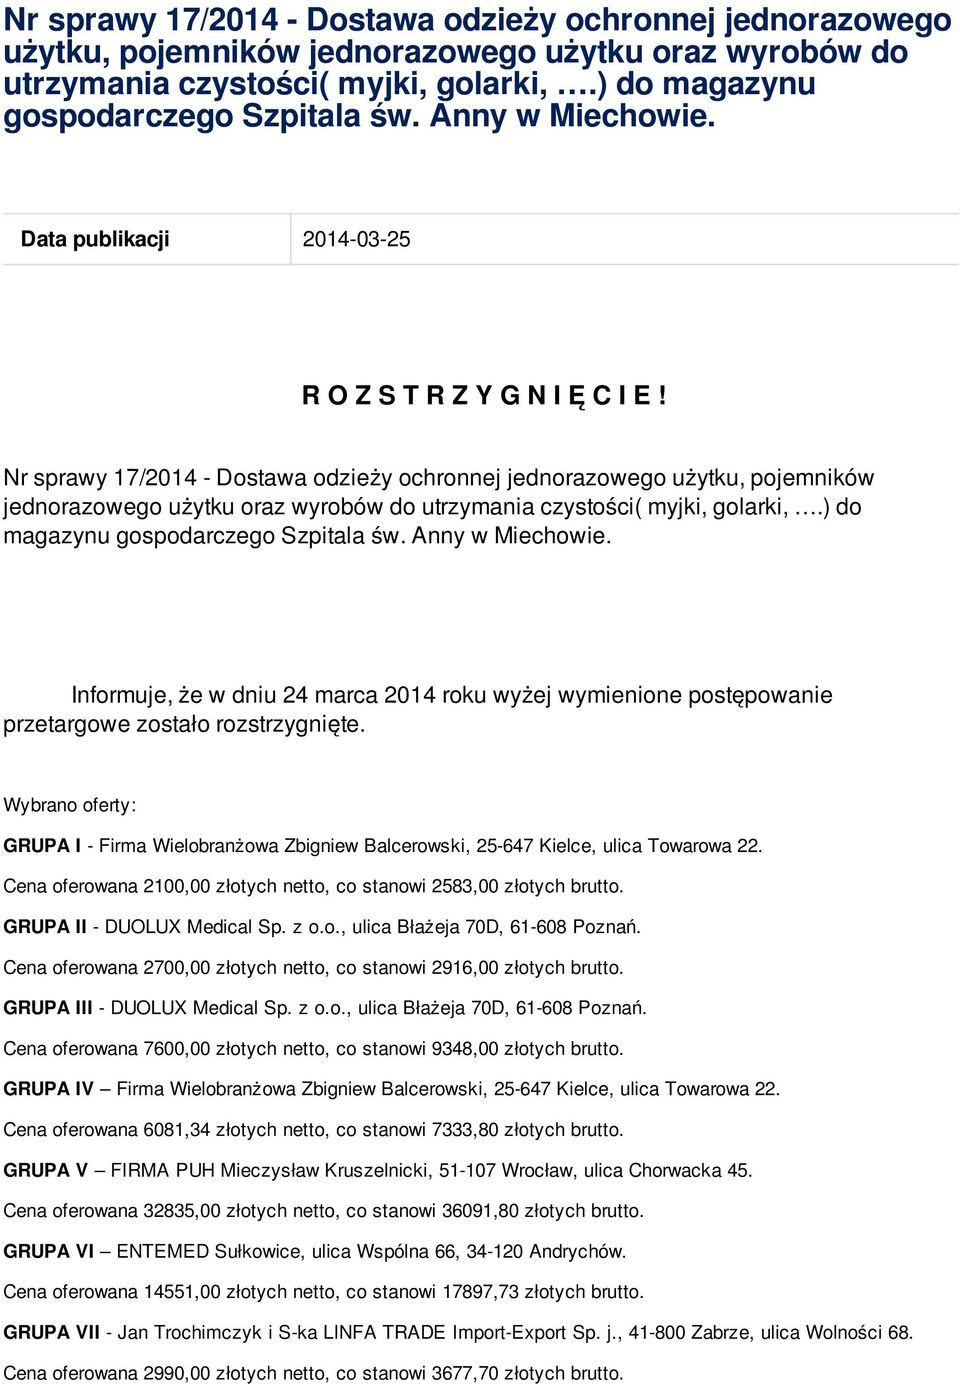 Wybrano : GRUPA I - Firma Wielobranżowa Zbigniew Cena oferowana 2,00 złotych netto, co stanowi 2583,00 złotych GRUPA II - DUOLUX Medical Sp. z o.o., ulica Błażeja 70D, 61-608 Poznań.